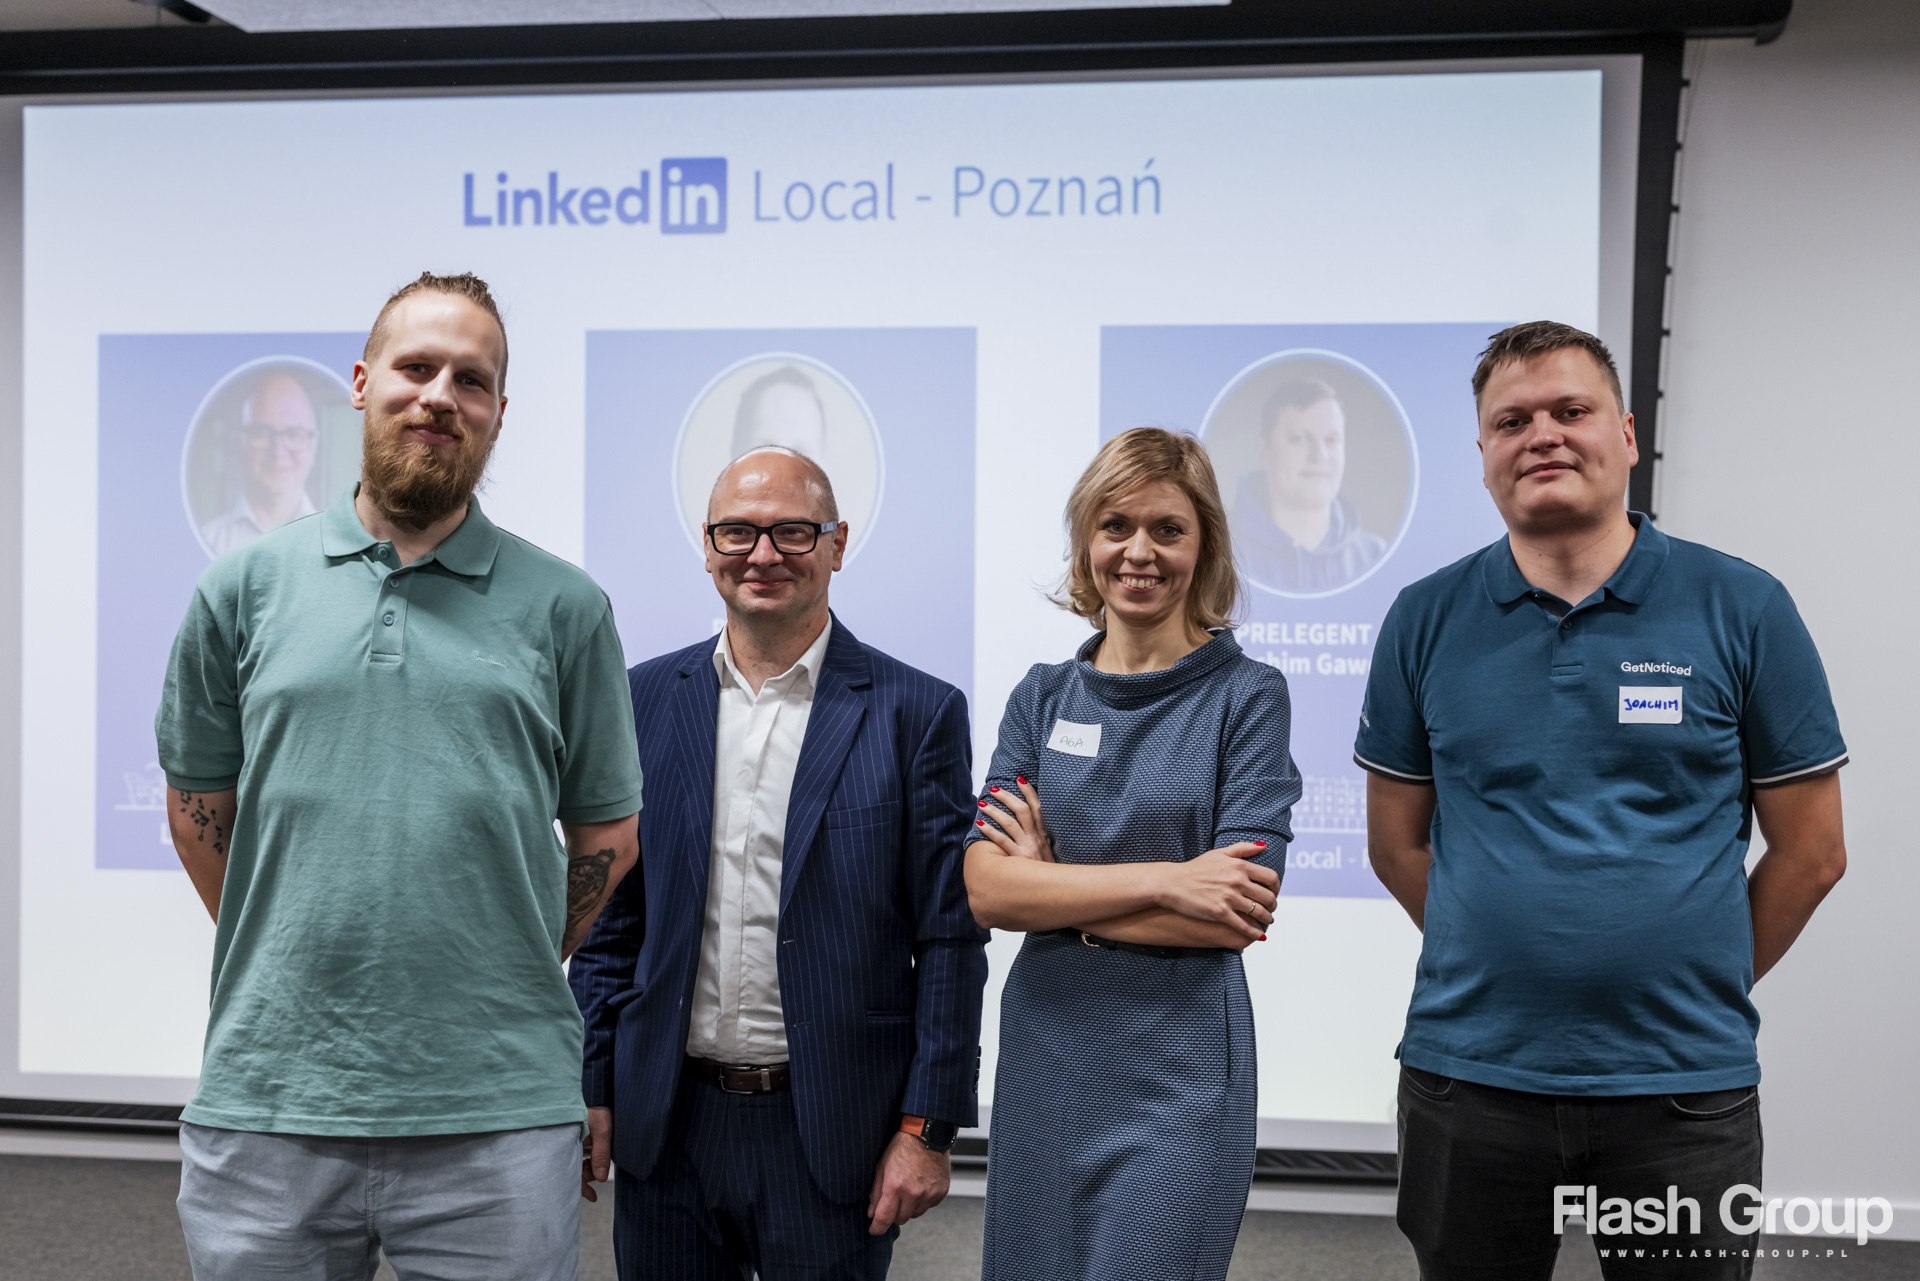 LinkedIn Local Poznań – kolejne networkingowe spotkanie w Poznaniu.